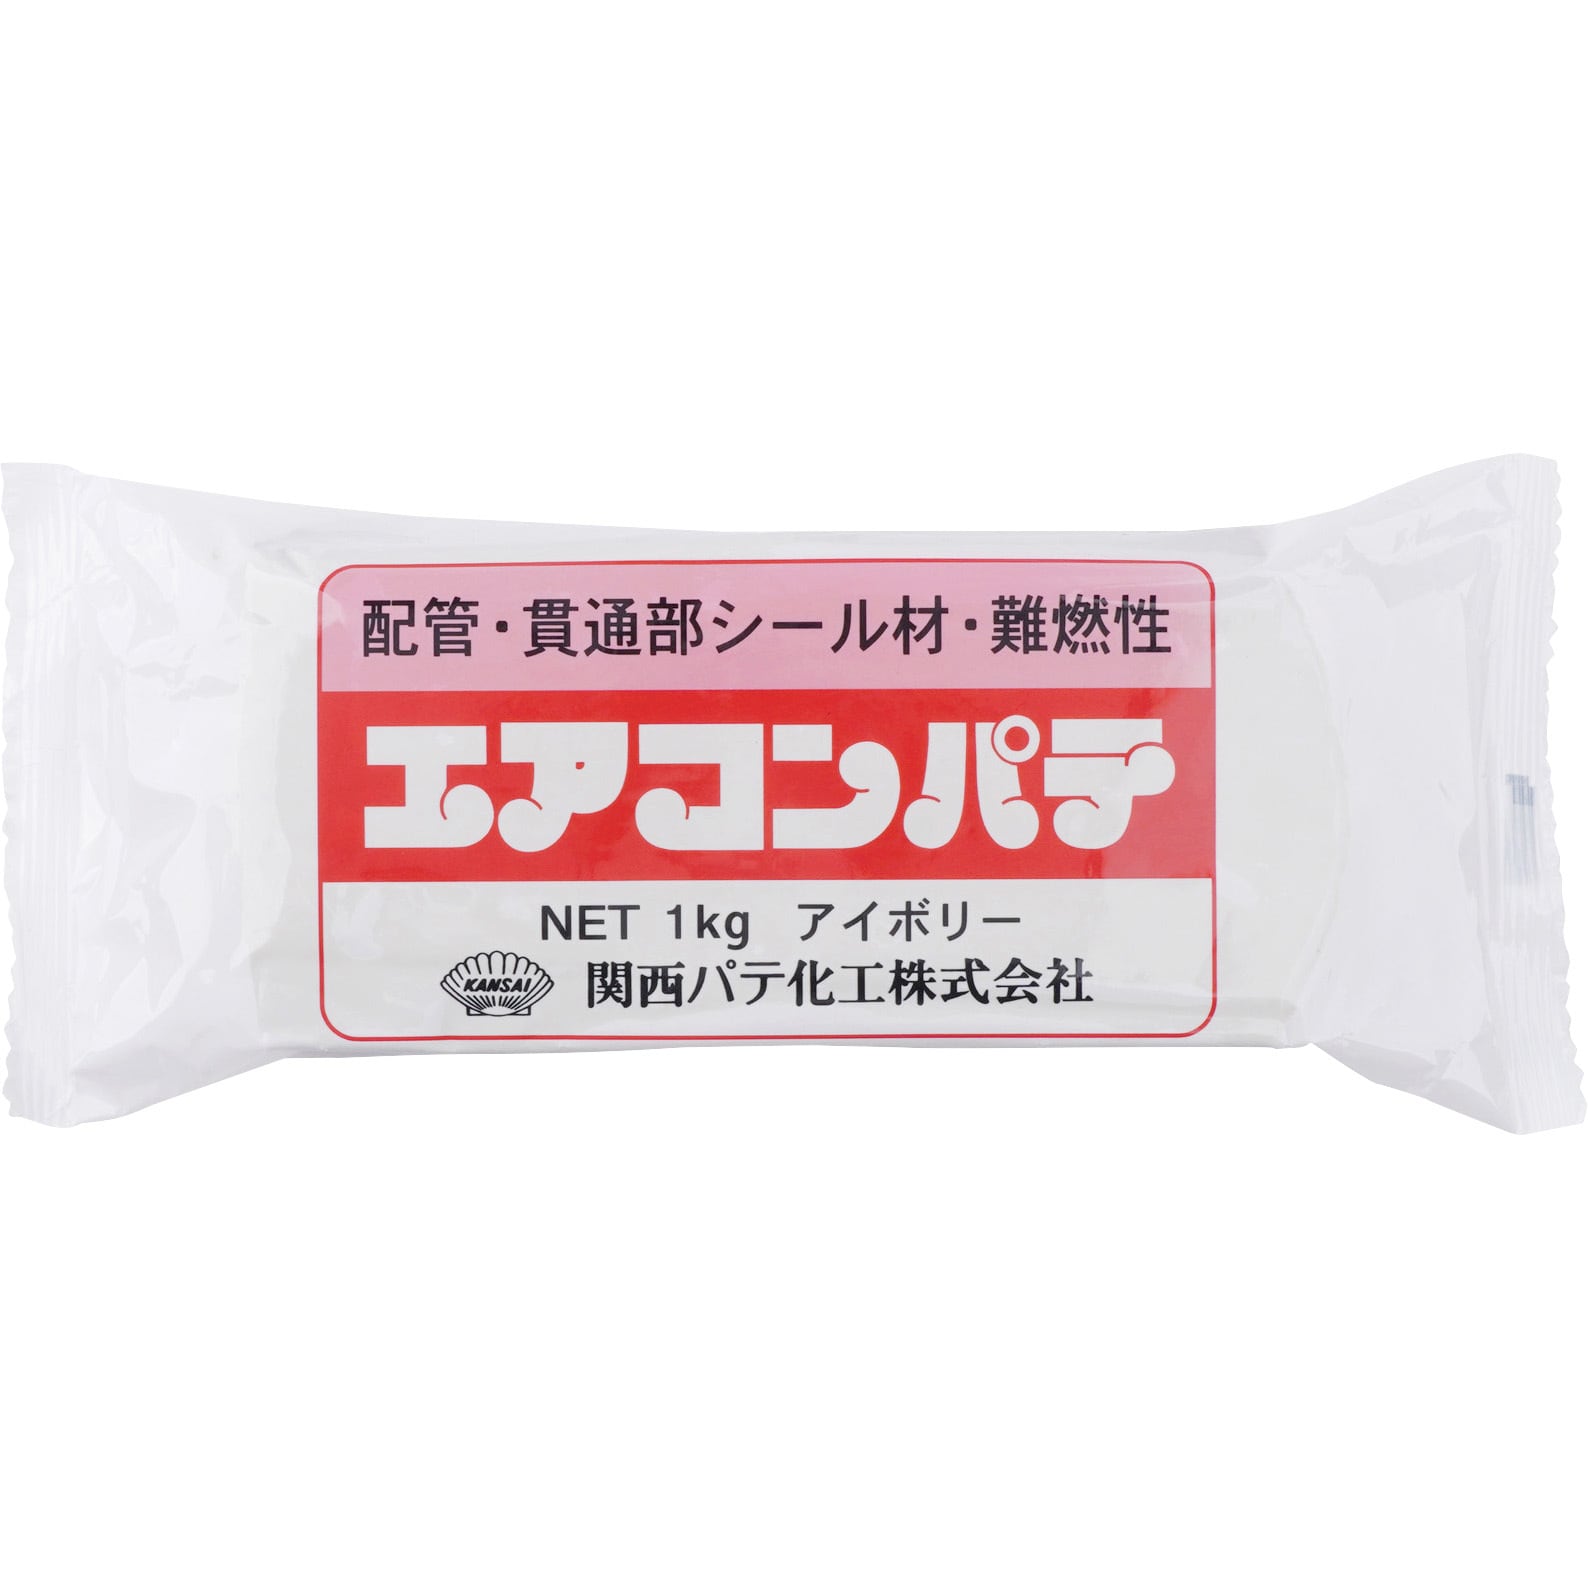 KAP1KG-I エアコンパテ アイボリー 1袋(1kg) 関西パテ化工 【通販